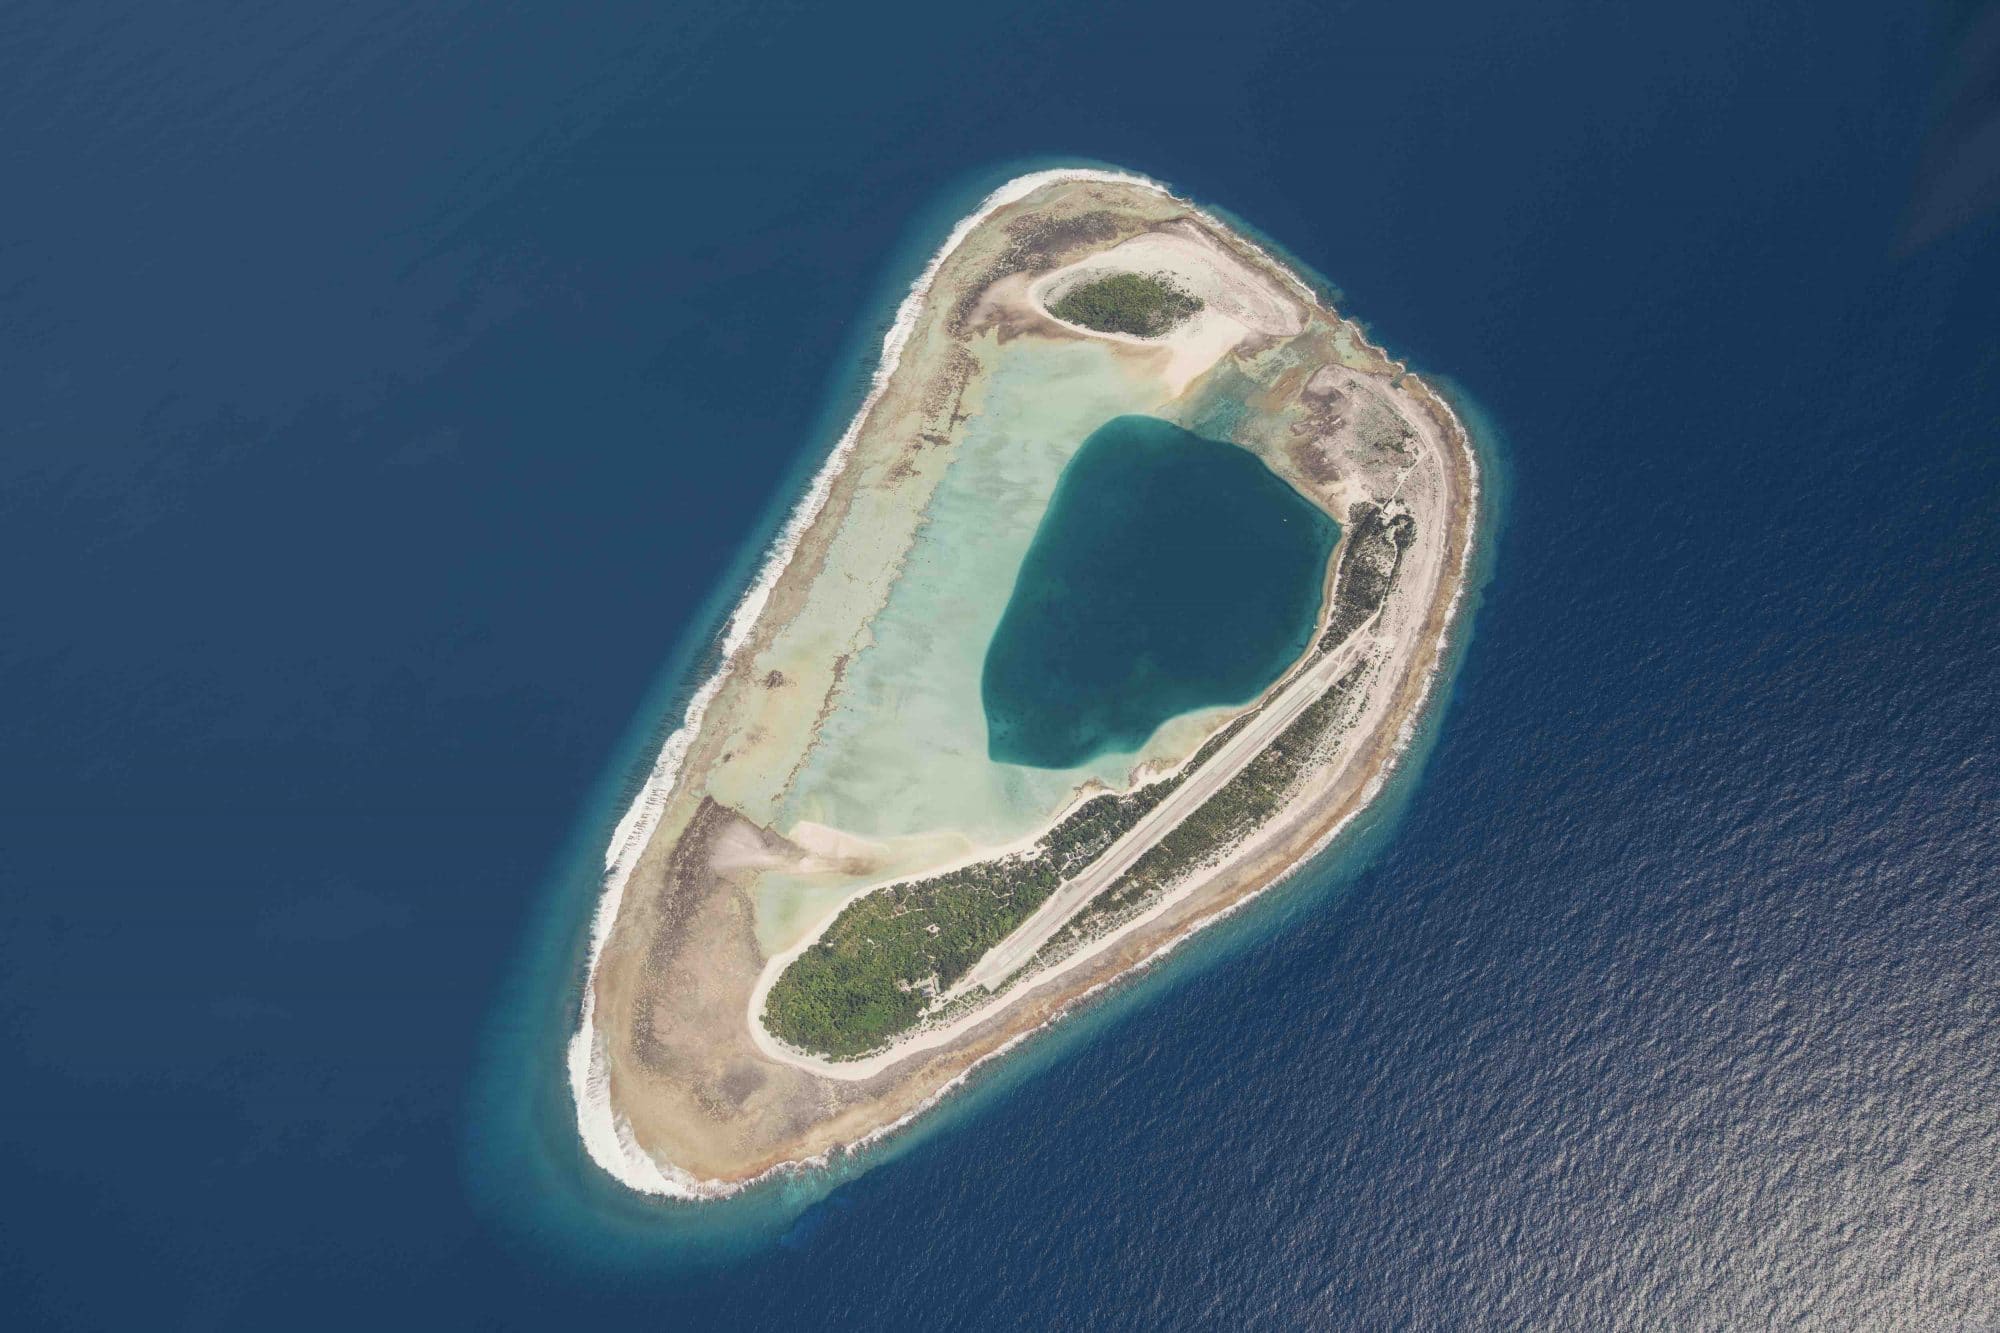 atoll de polynésie française